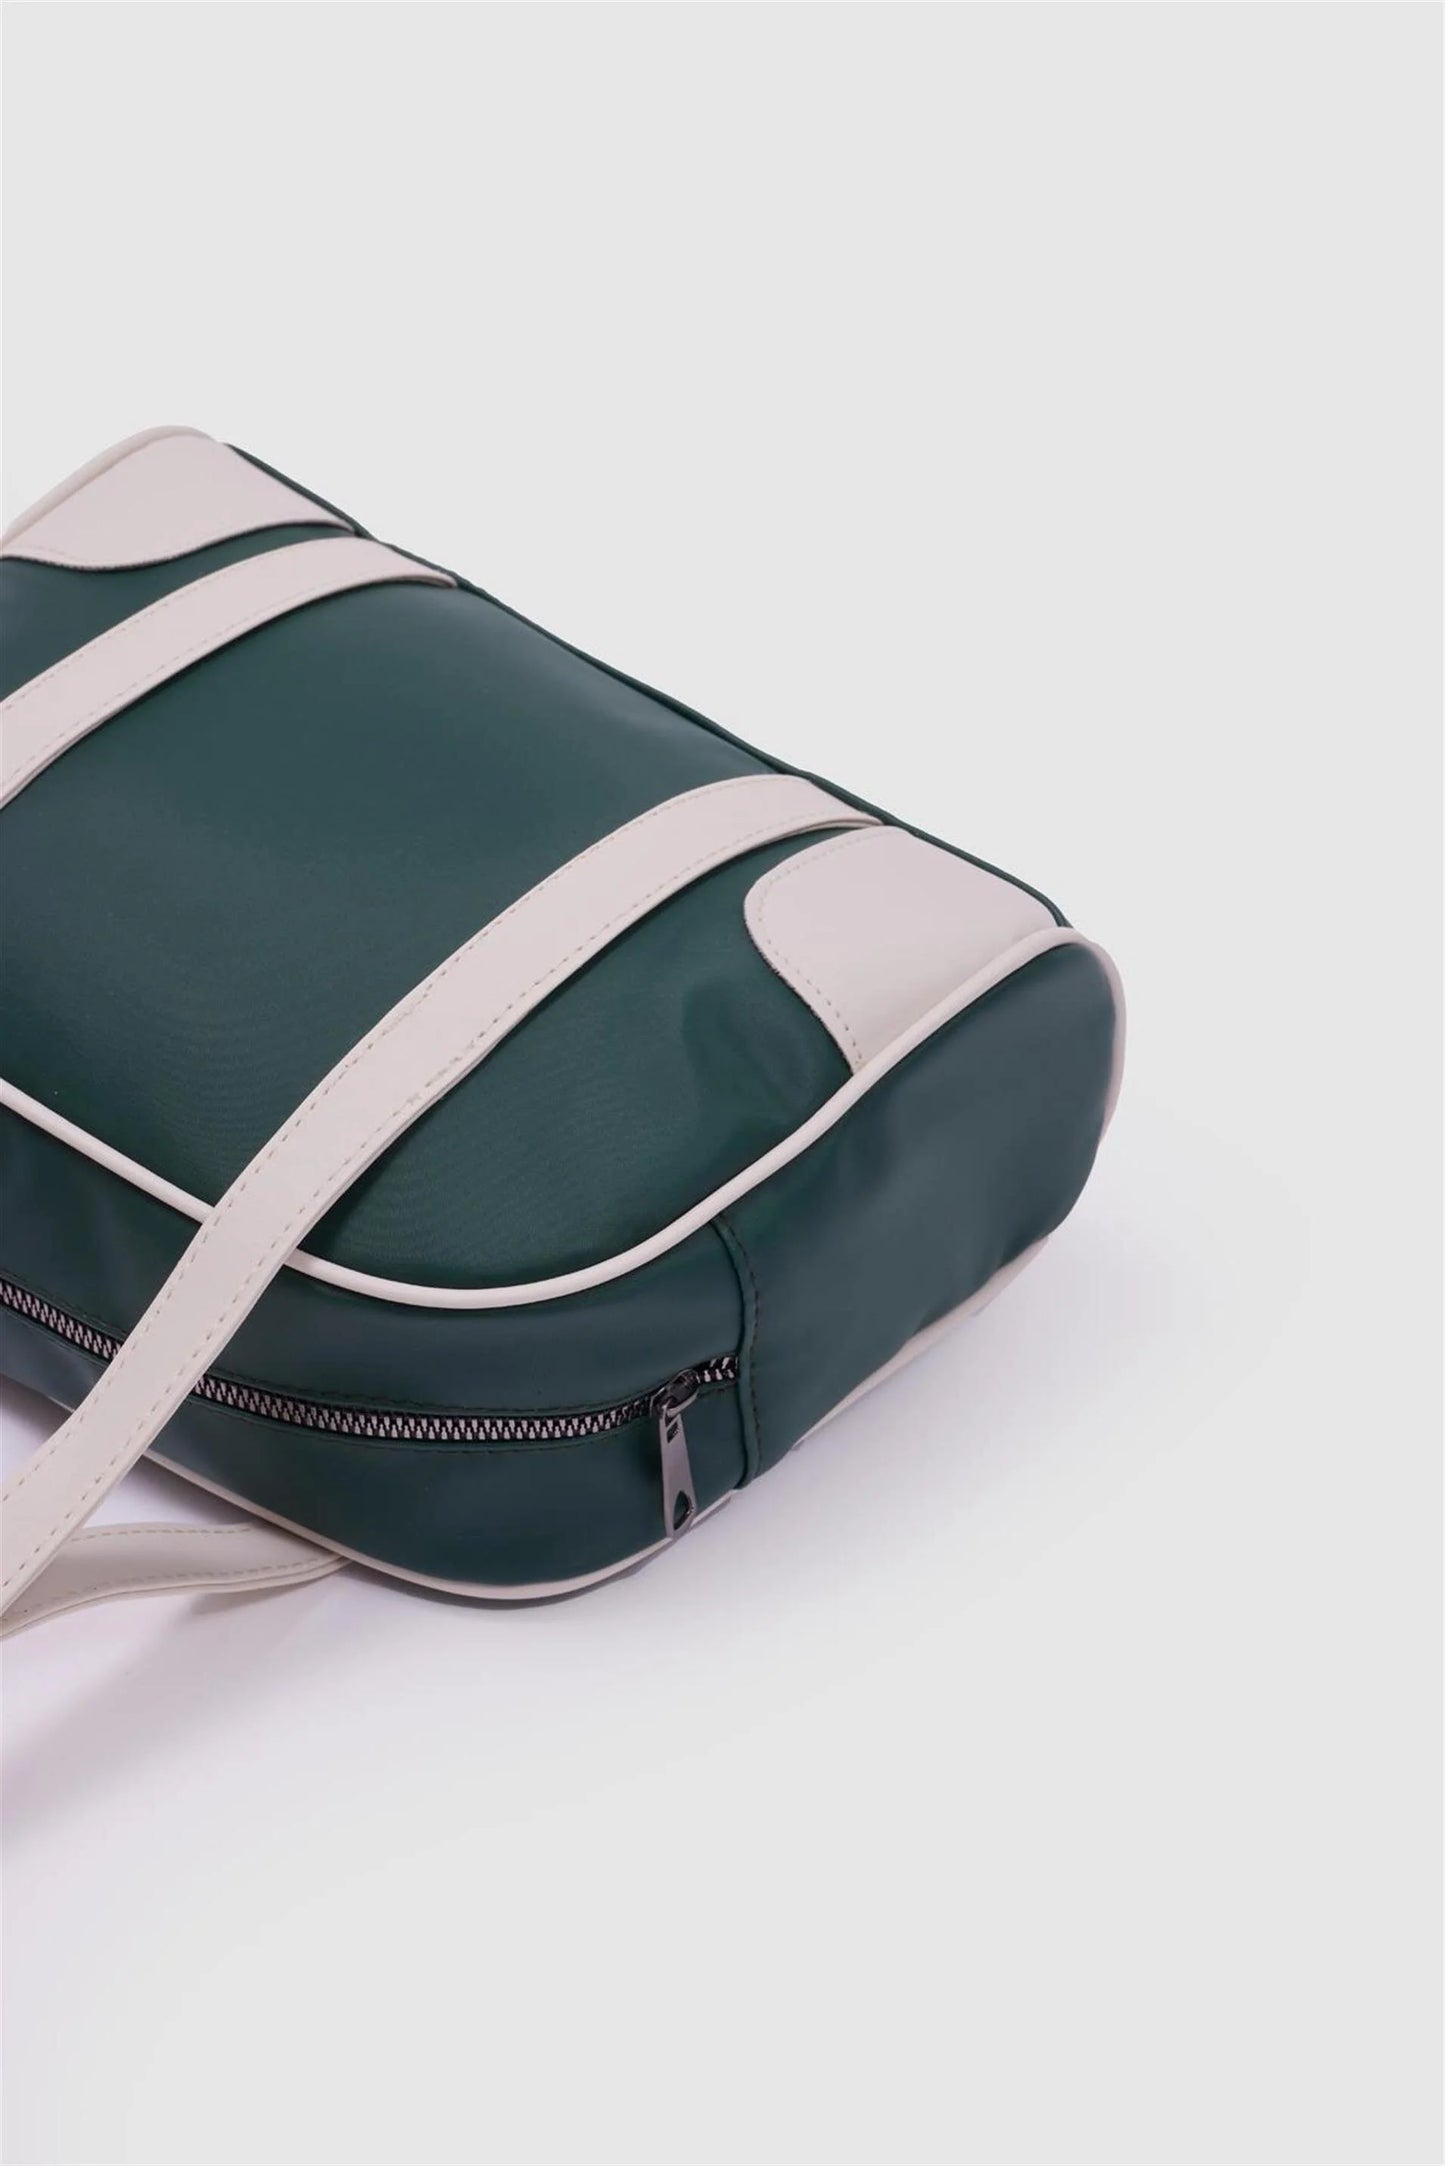 College Pattern Green Retro Shoulder Bag Moon bag LUNARITY GARAGE   